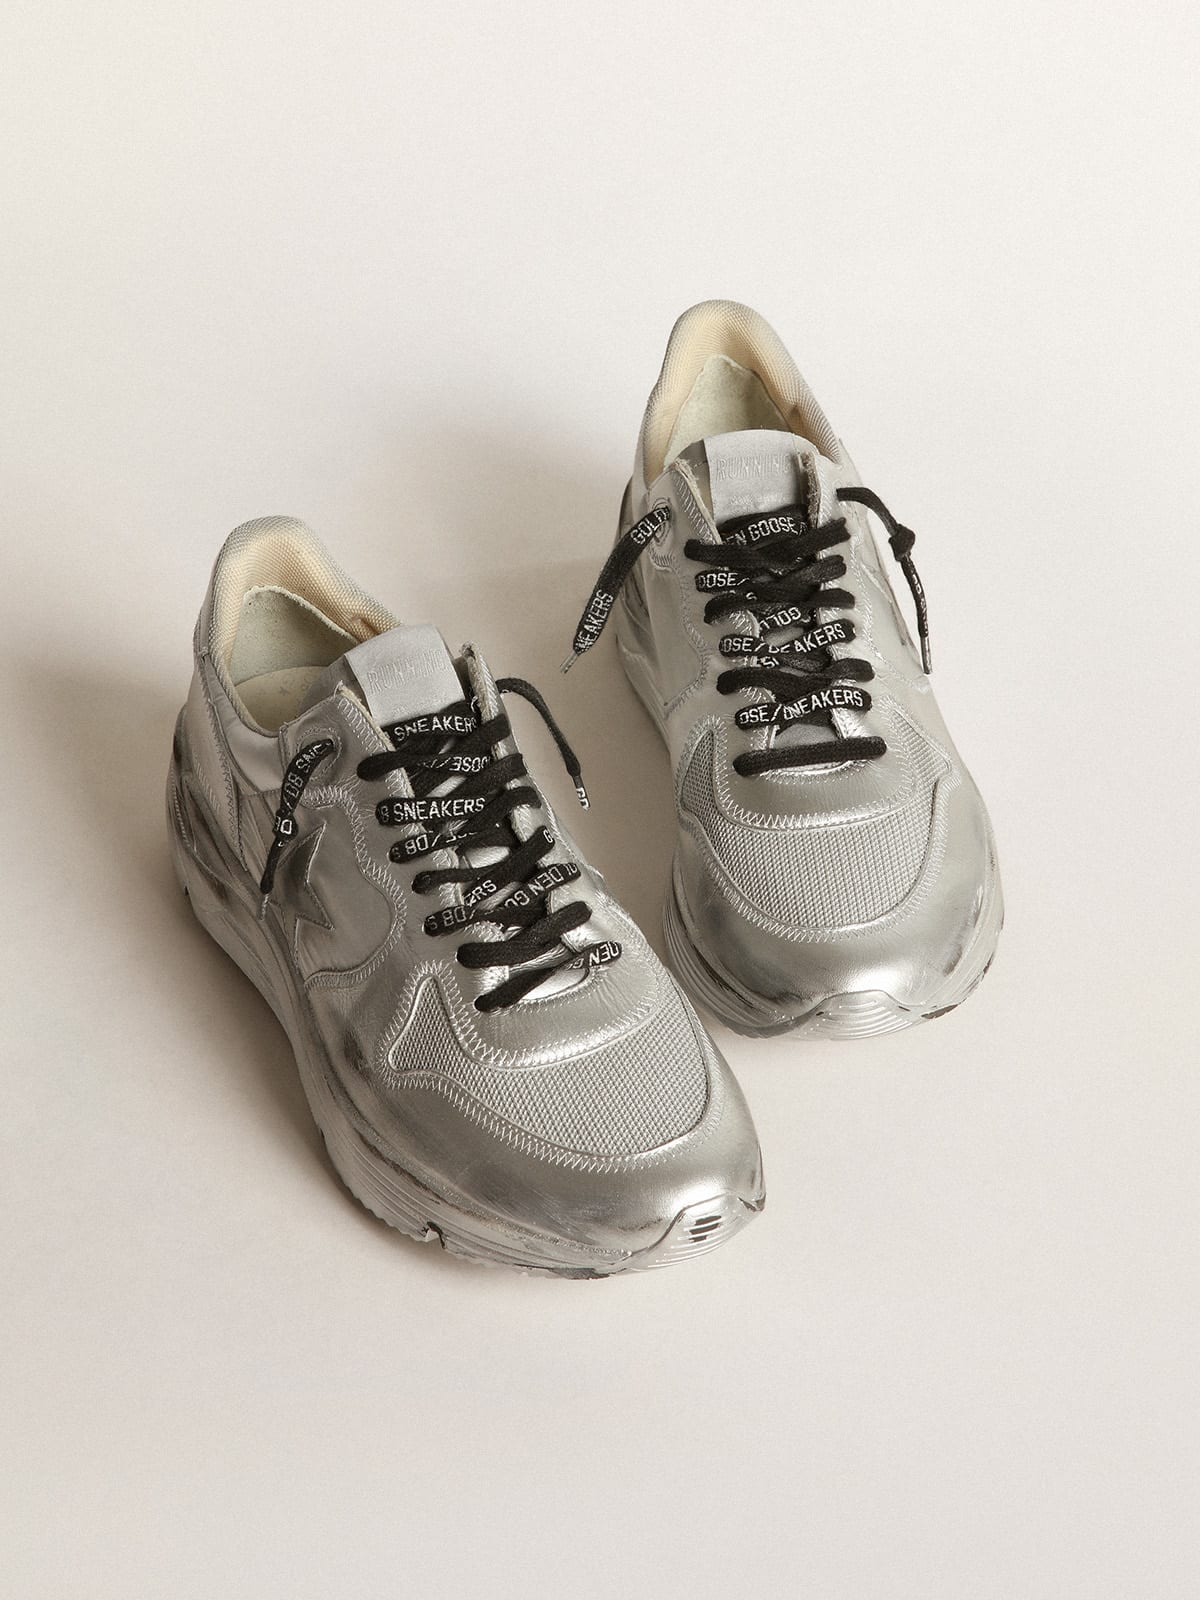 Golden Goose - Running Sole sneakers in nylon with hi-tech mesh toecap in 